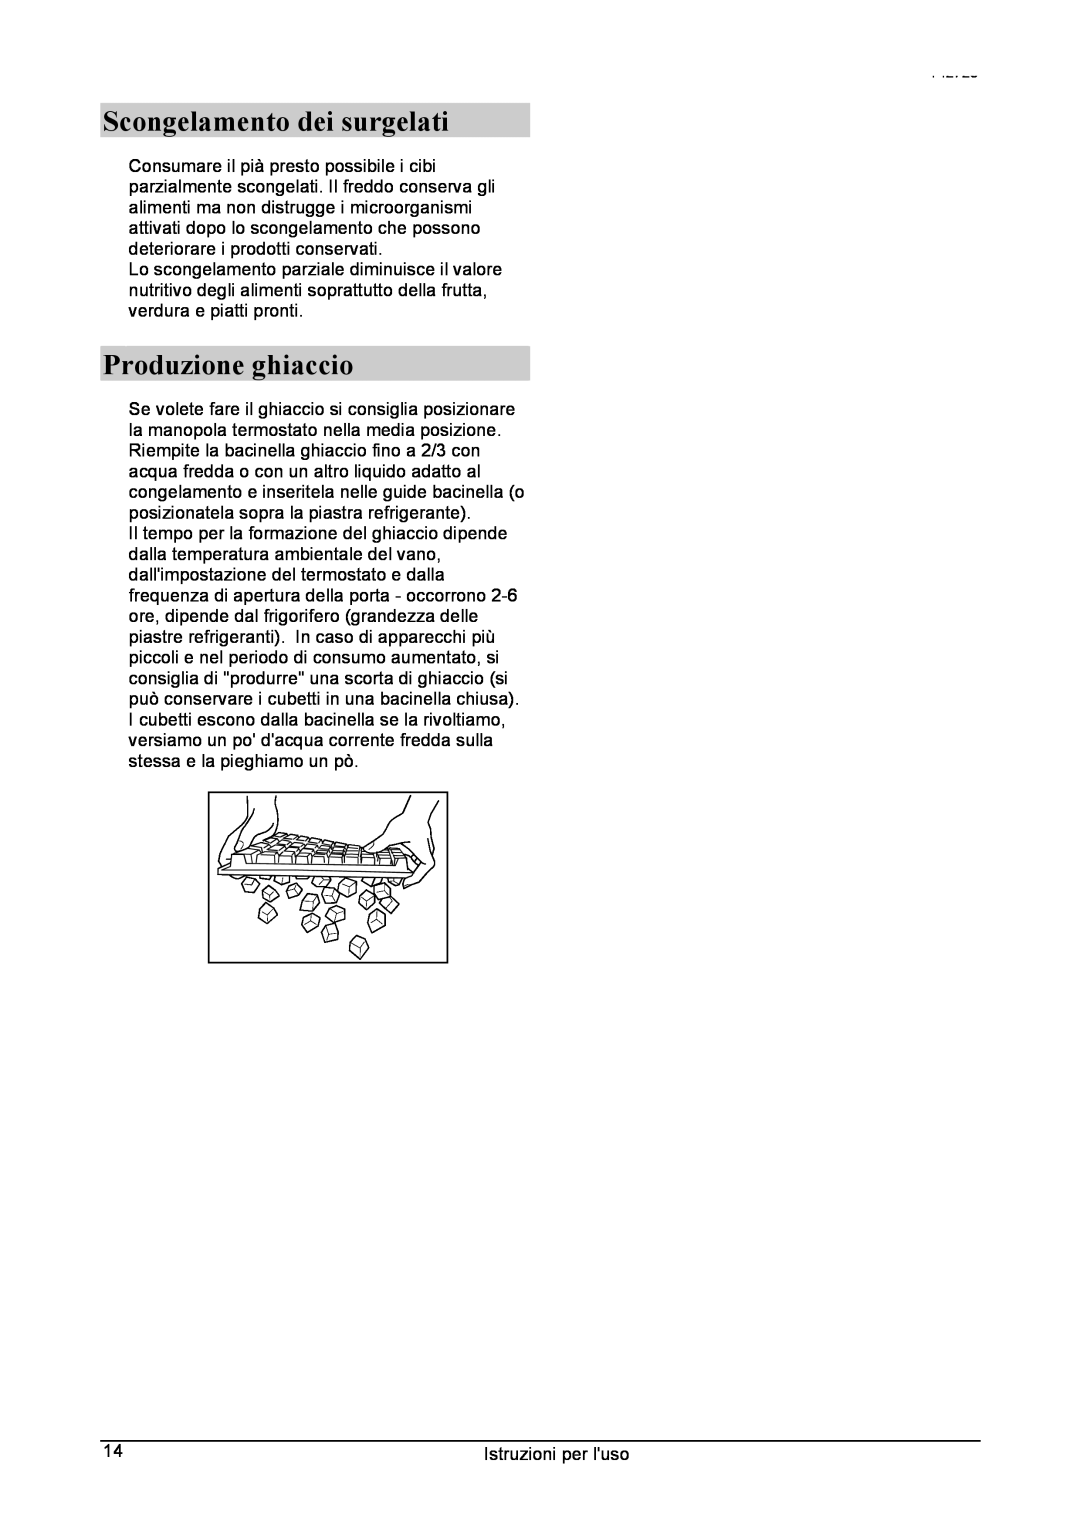 Smeg 142725 manual Scongelamento dei surgelati, Produzione ghiaccio 